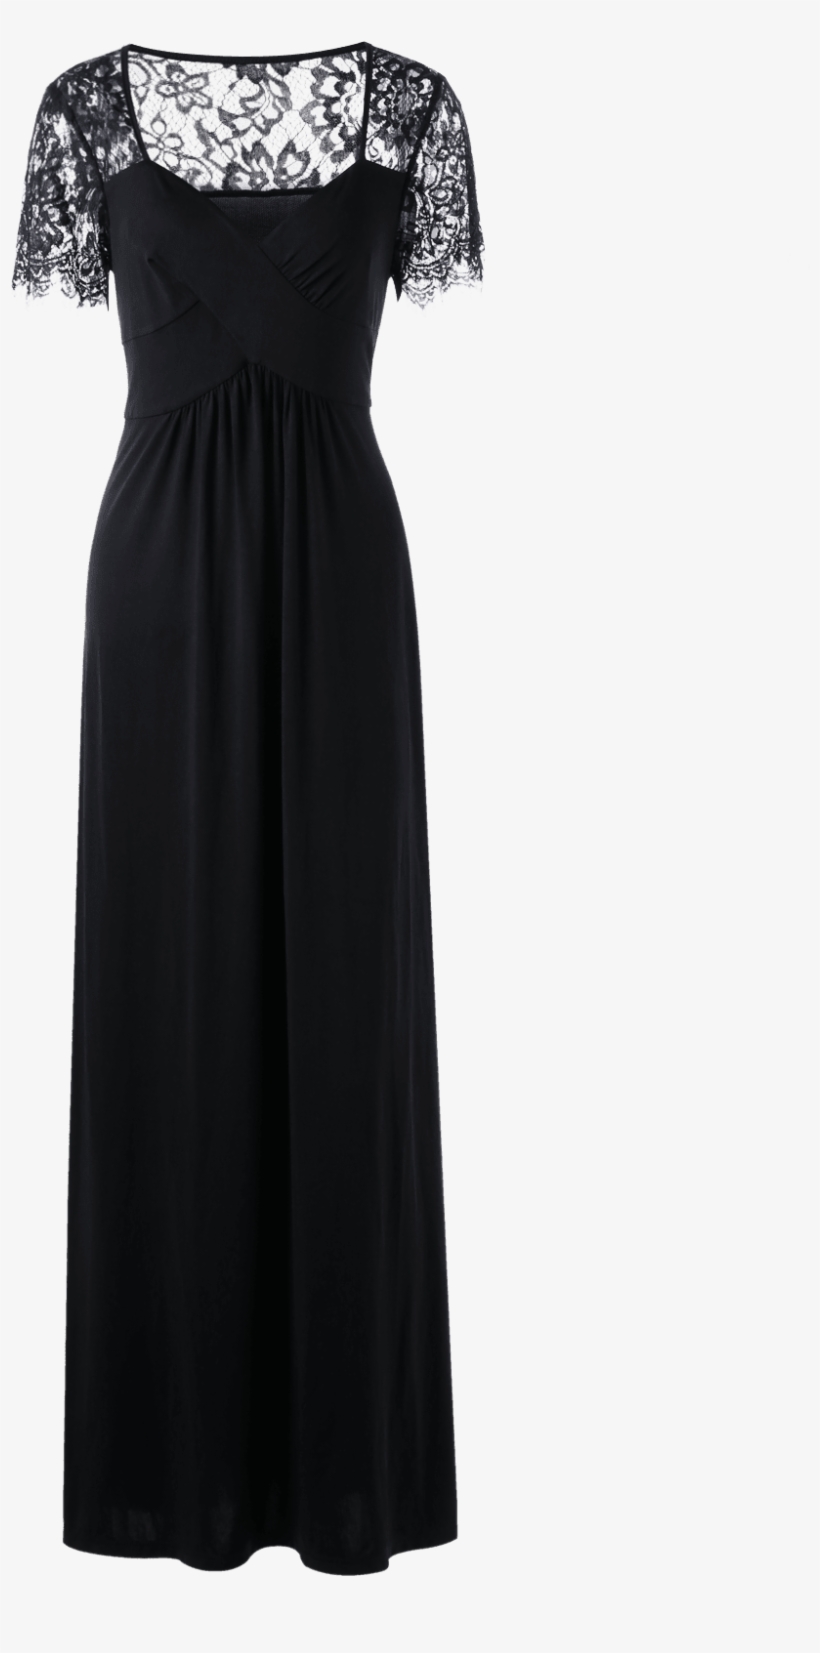 Dropship Plus Size Empire Waist Lace Panel Dress To - Dress, transparent png #9887622